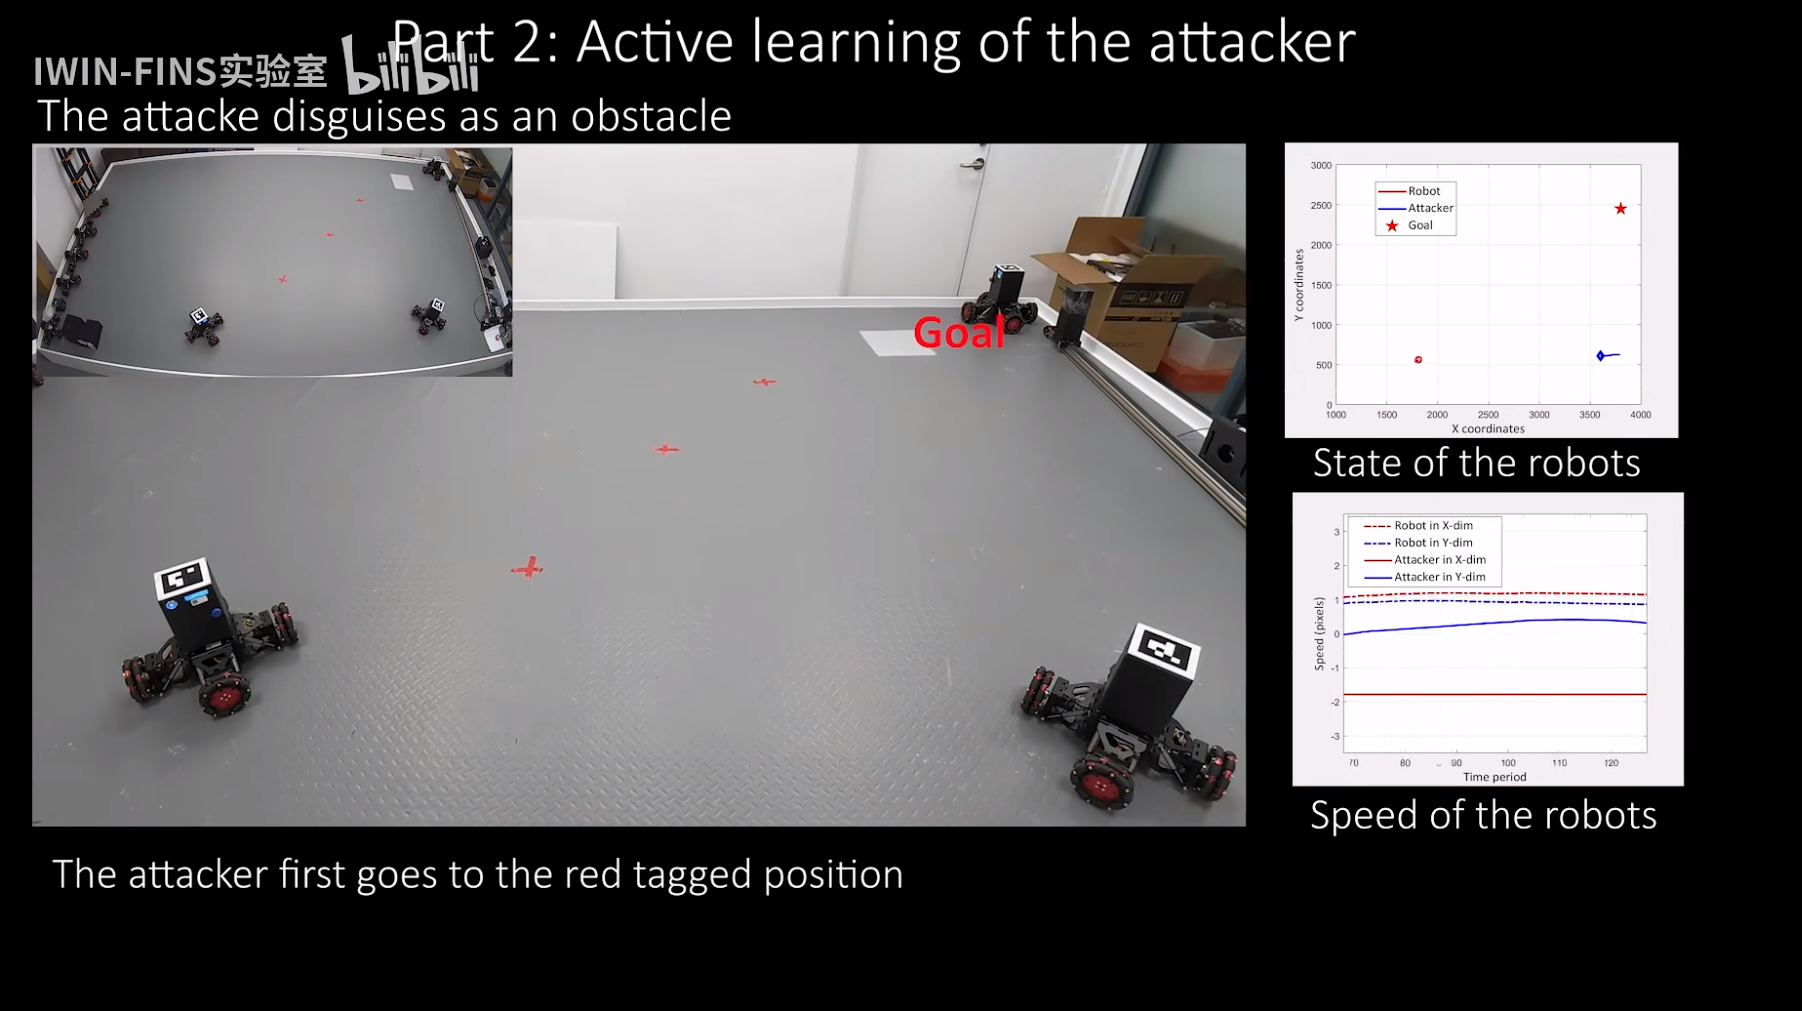 【论文阅读】Intelligent Physical Attack Against Mobile Robots With Obstacle-Avoidance